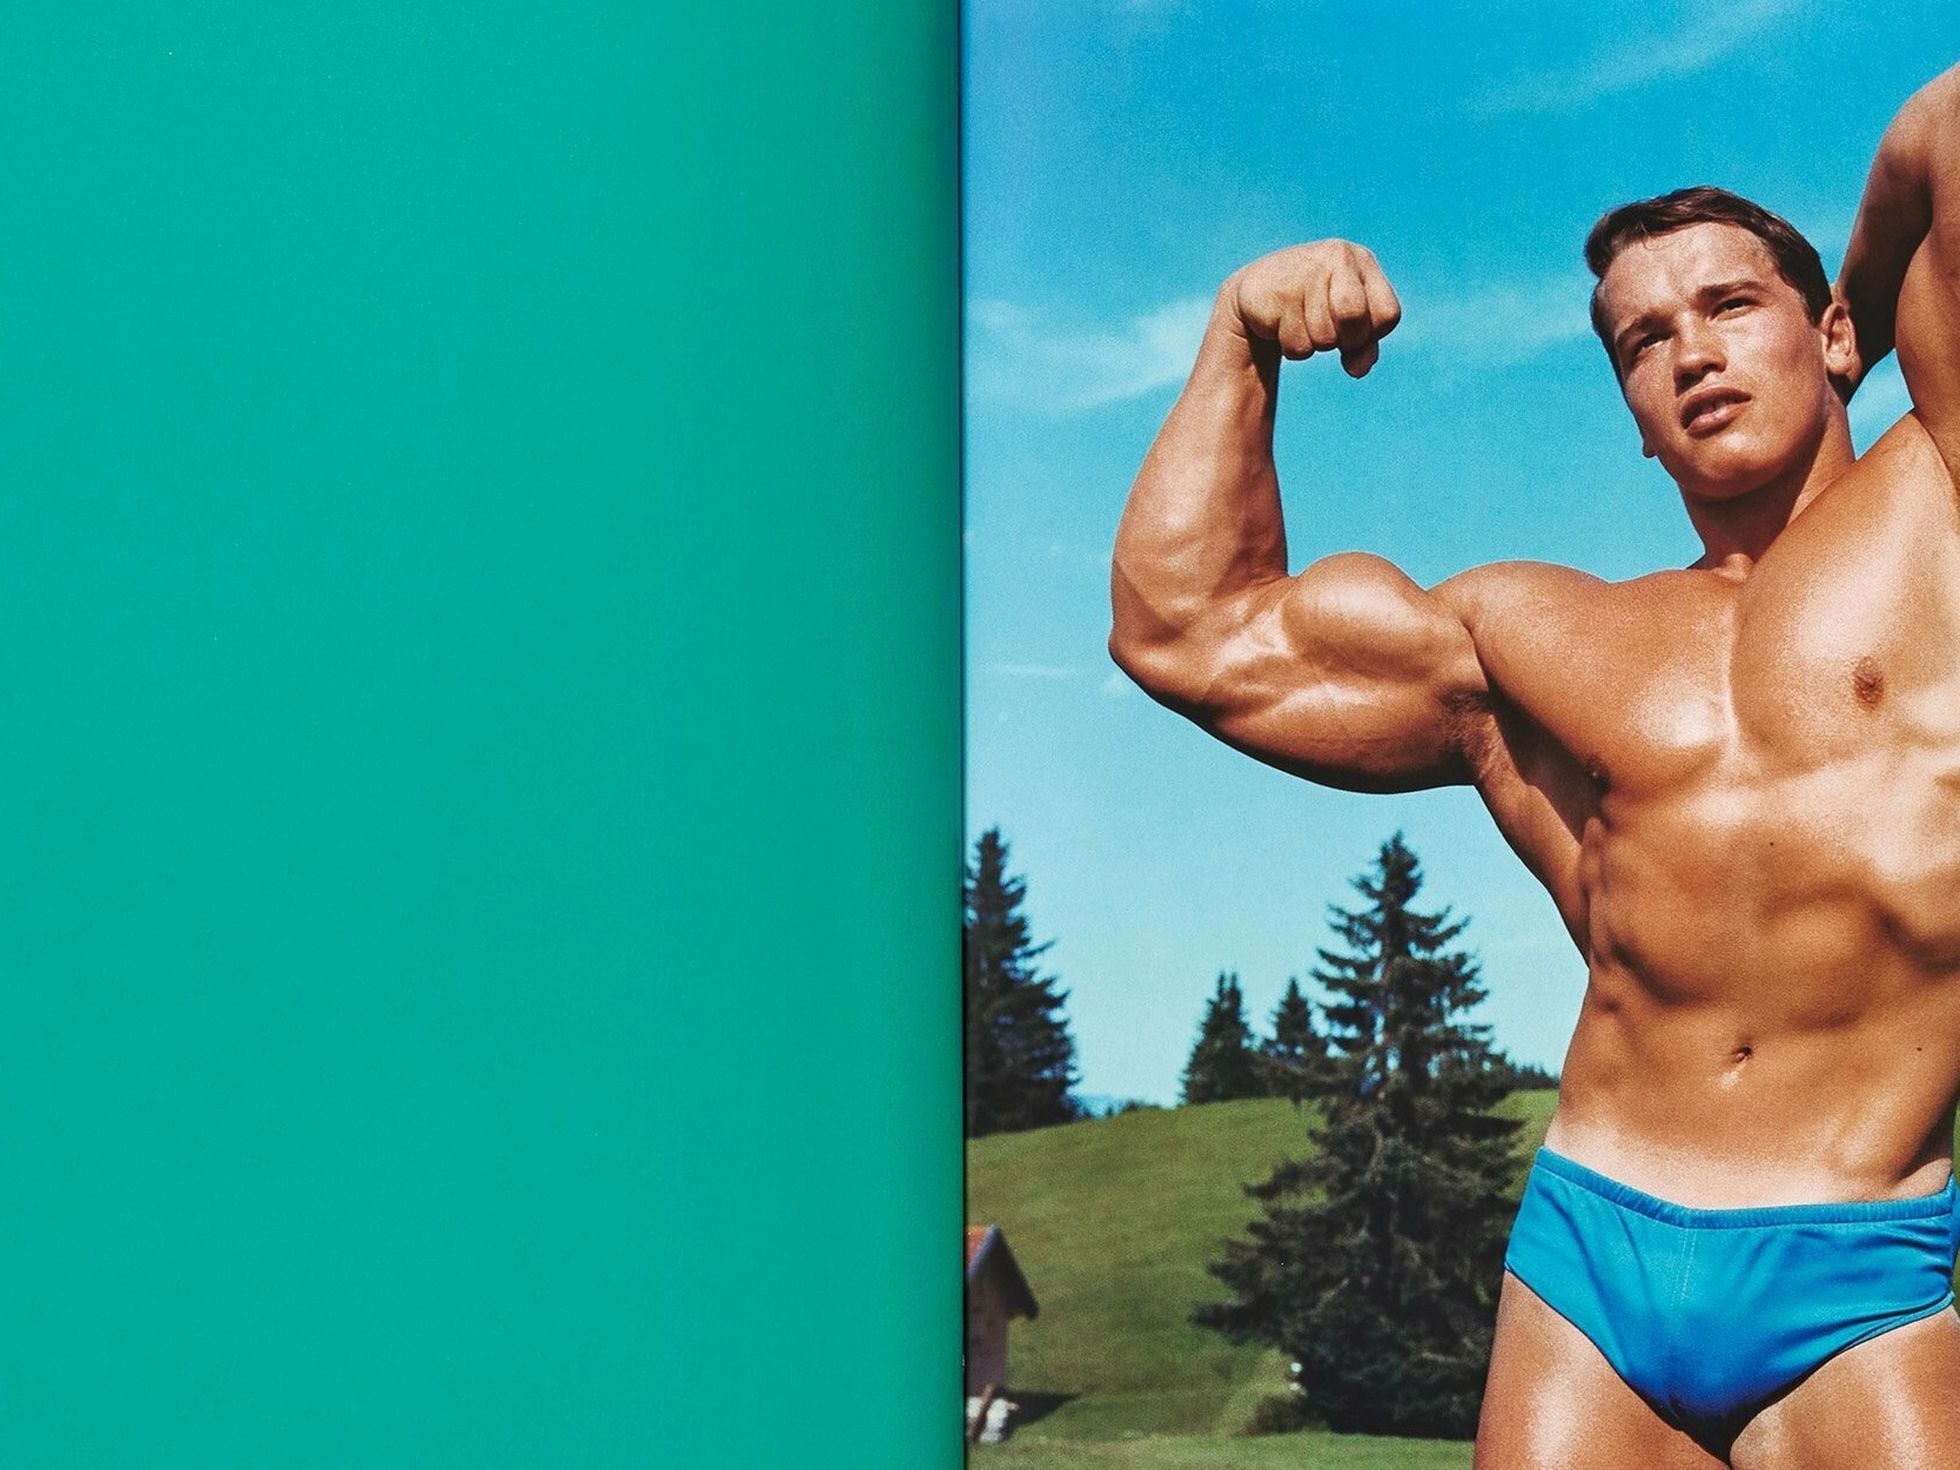 Arnold Schwarzenegger presenta su autobiografía en fotos: “Soy